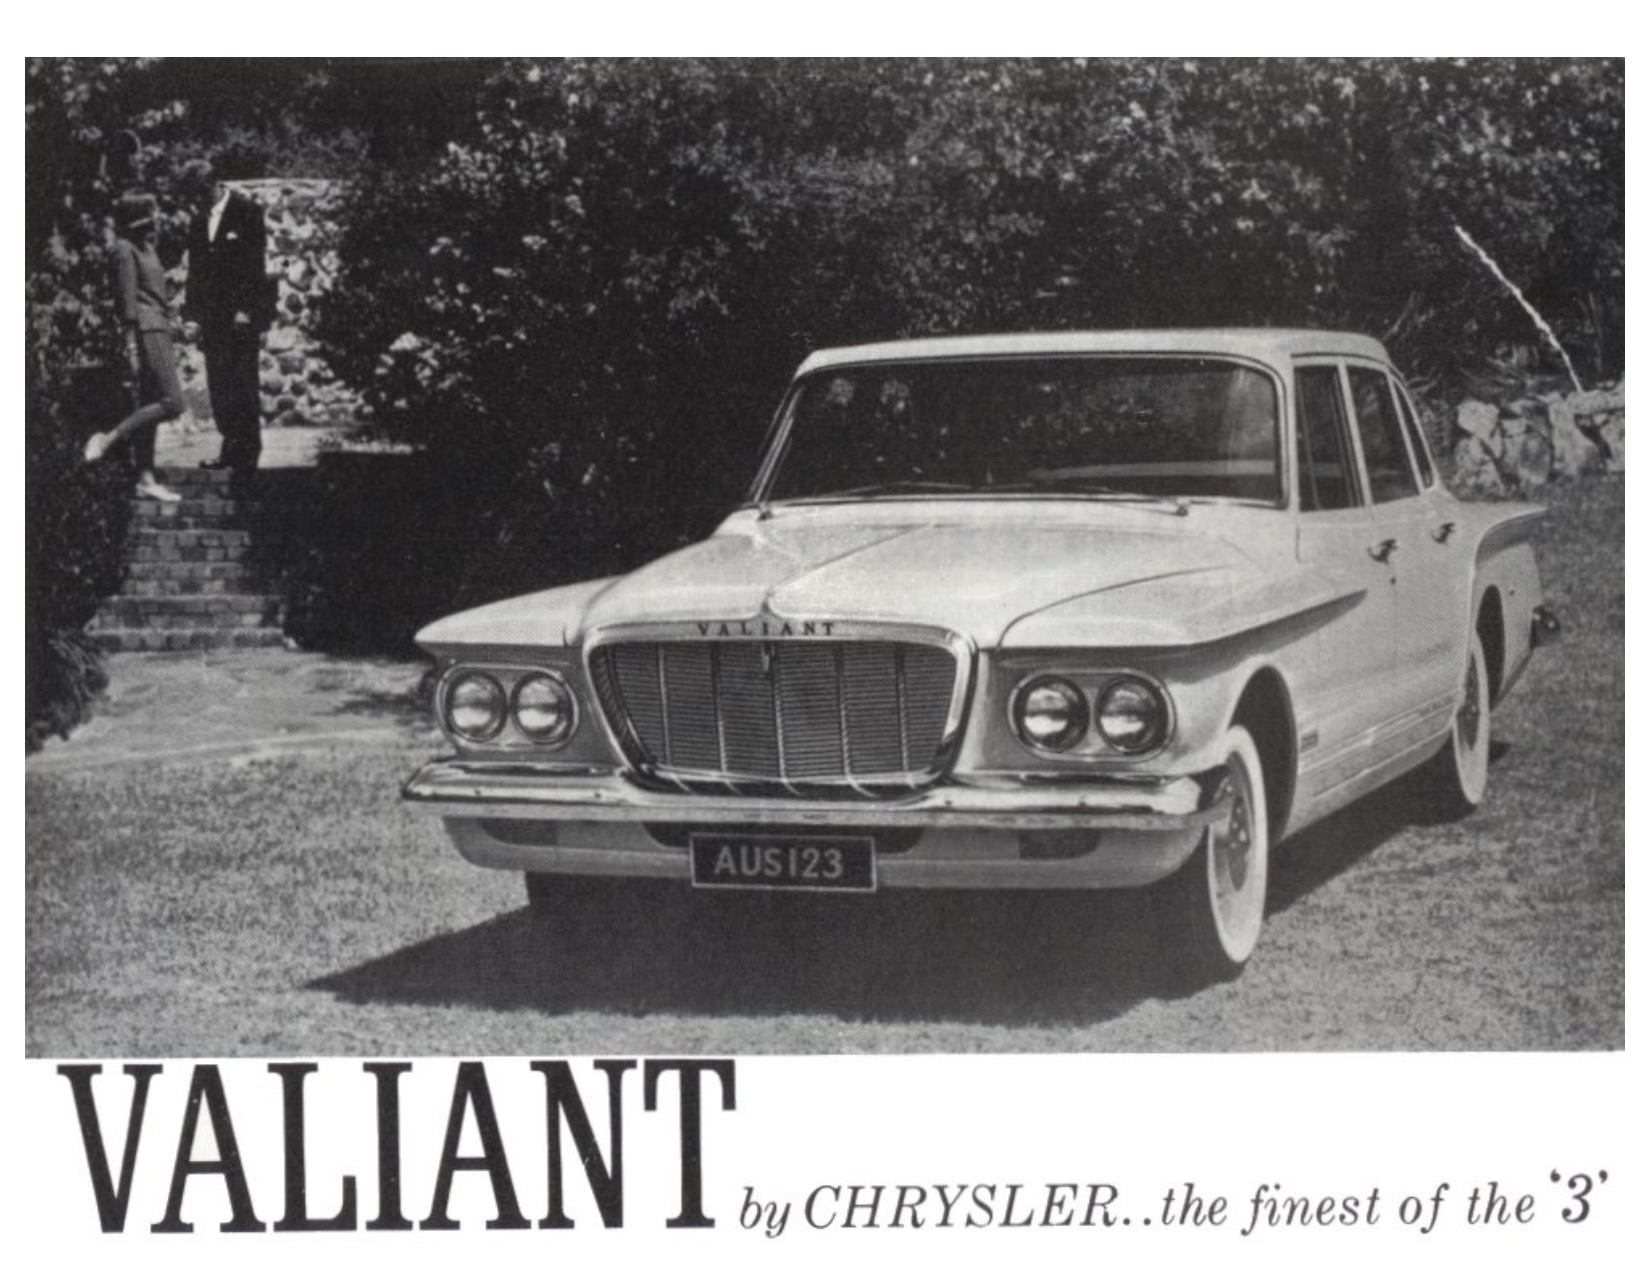 1962 Chrysler S-Series Valiant Brochure